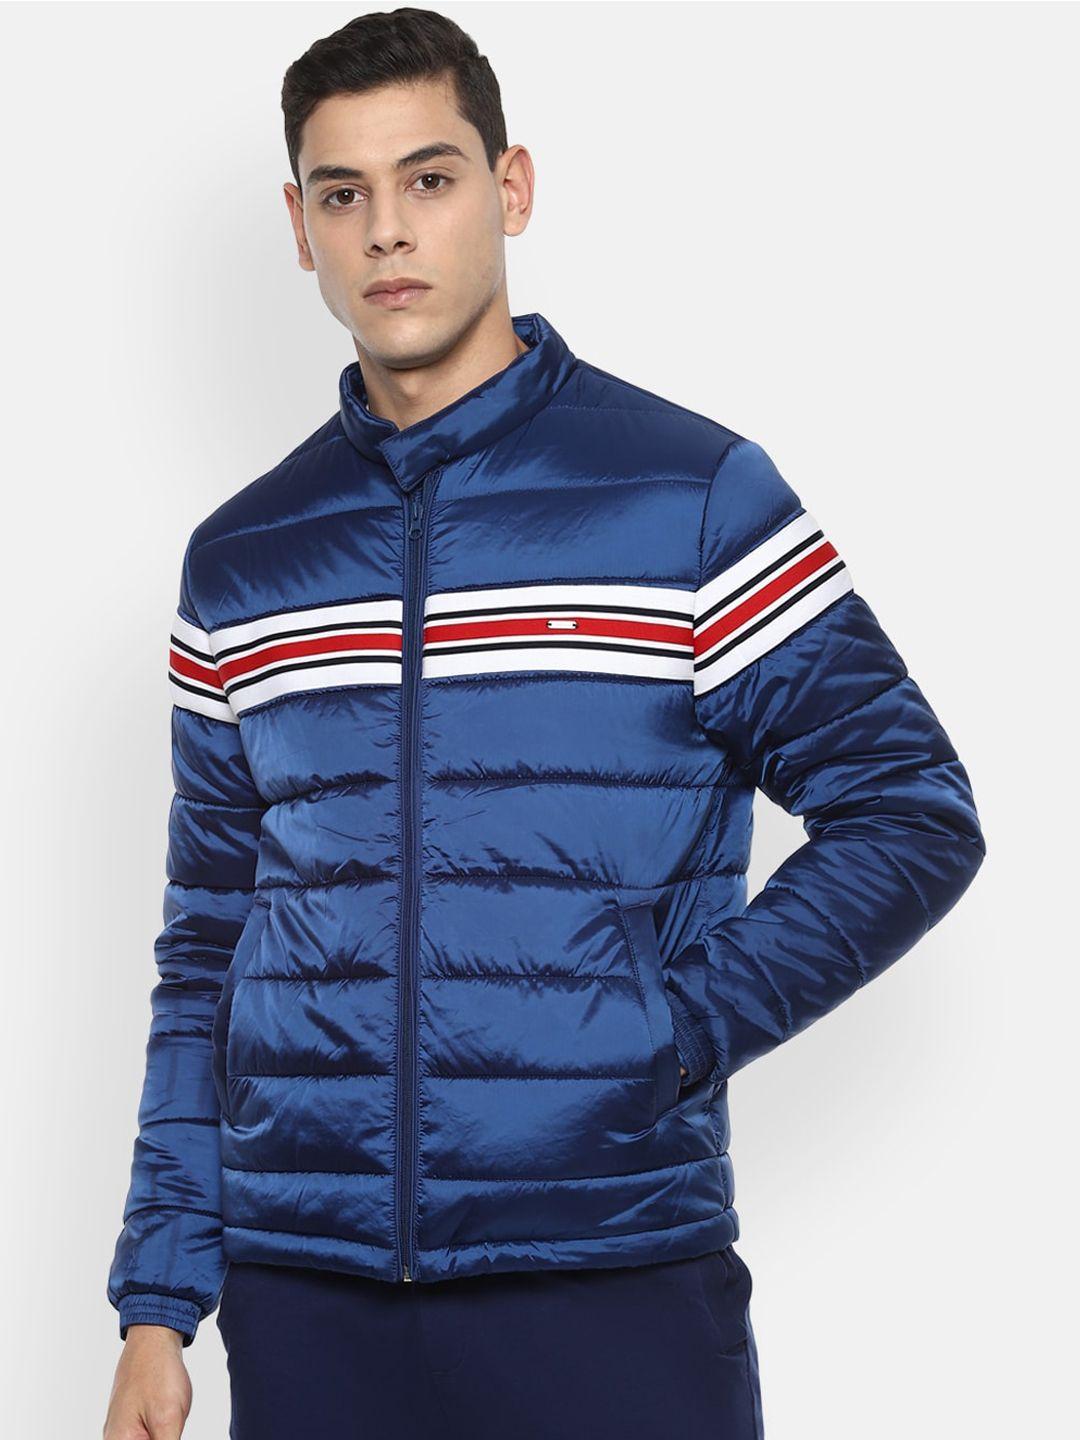 van heusen sport men blue red striped lightweight puffer jacket